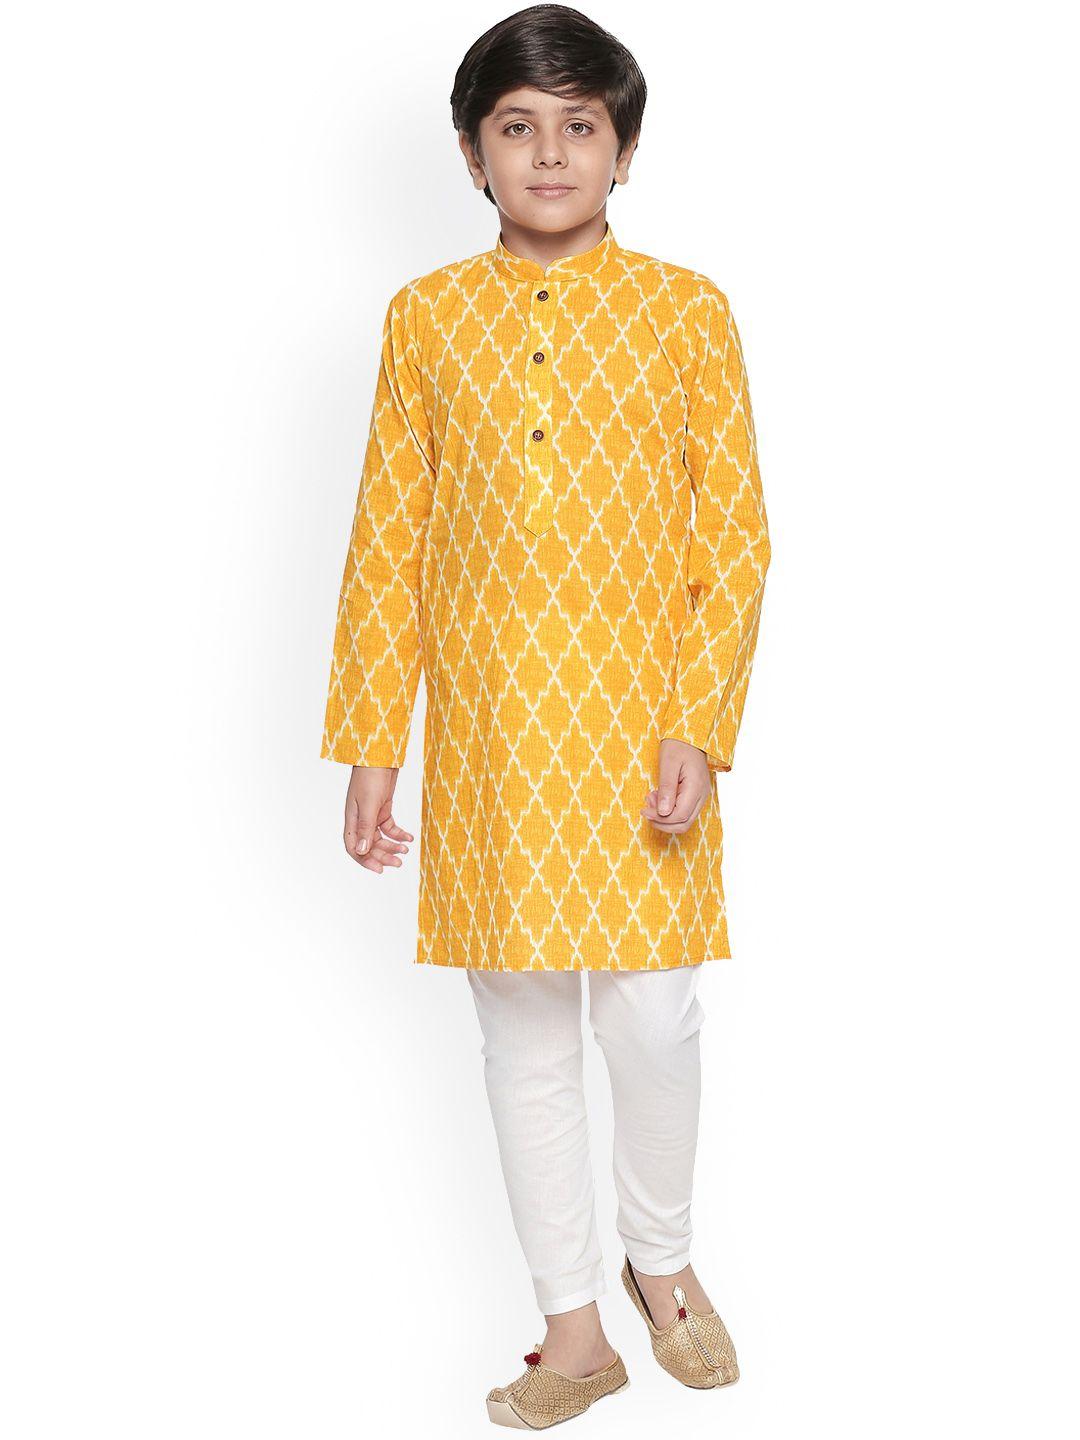 jeetethnics boys yellow & white printed kurta with pyjamas